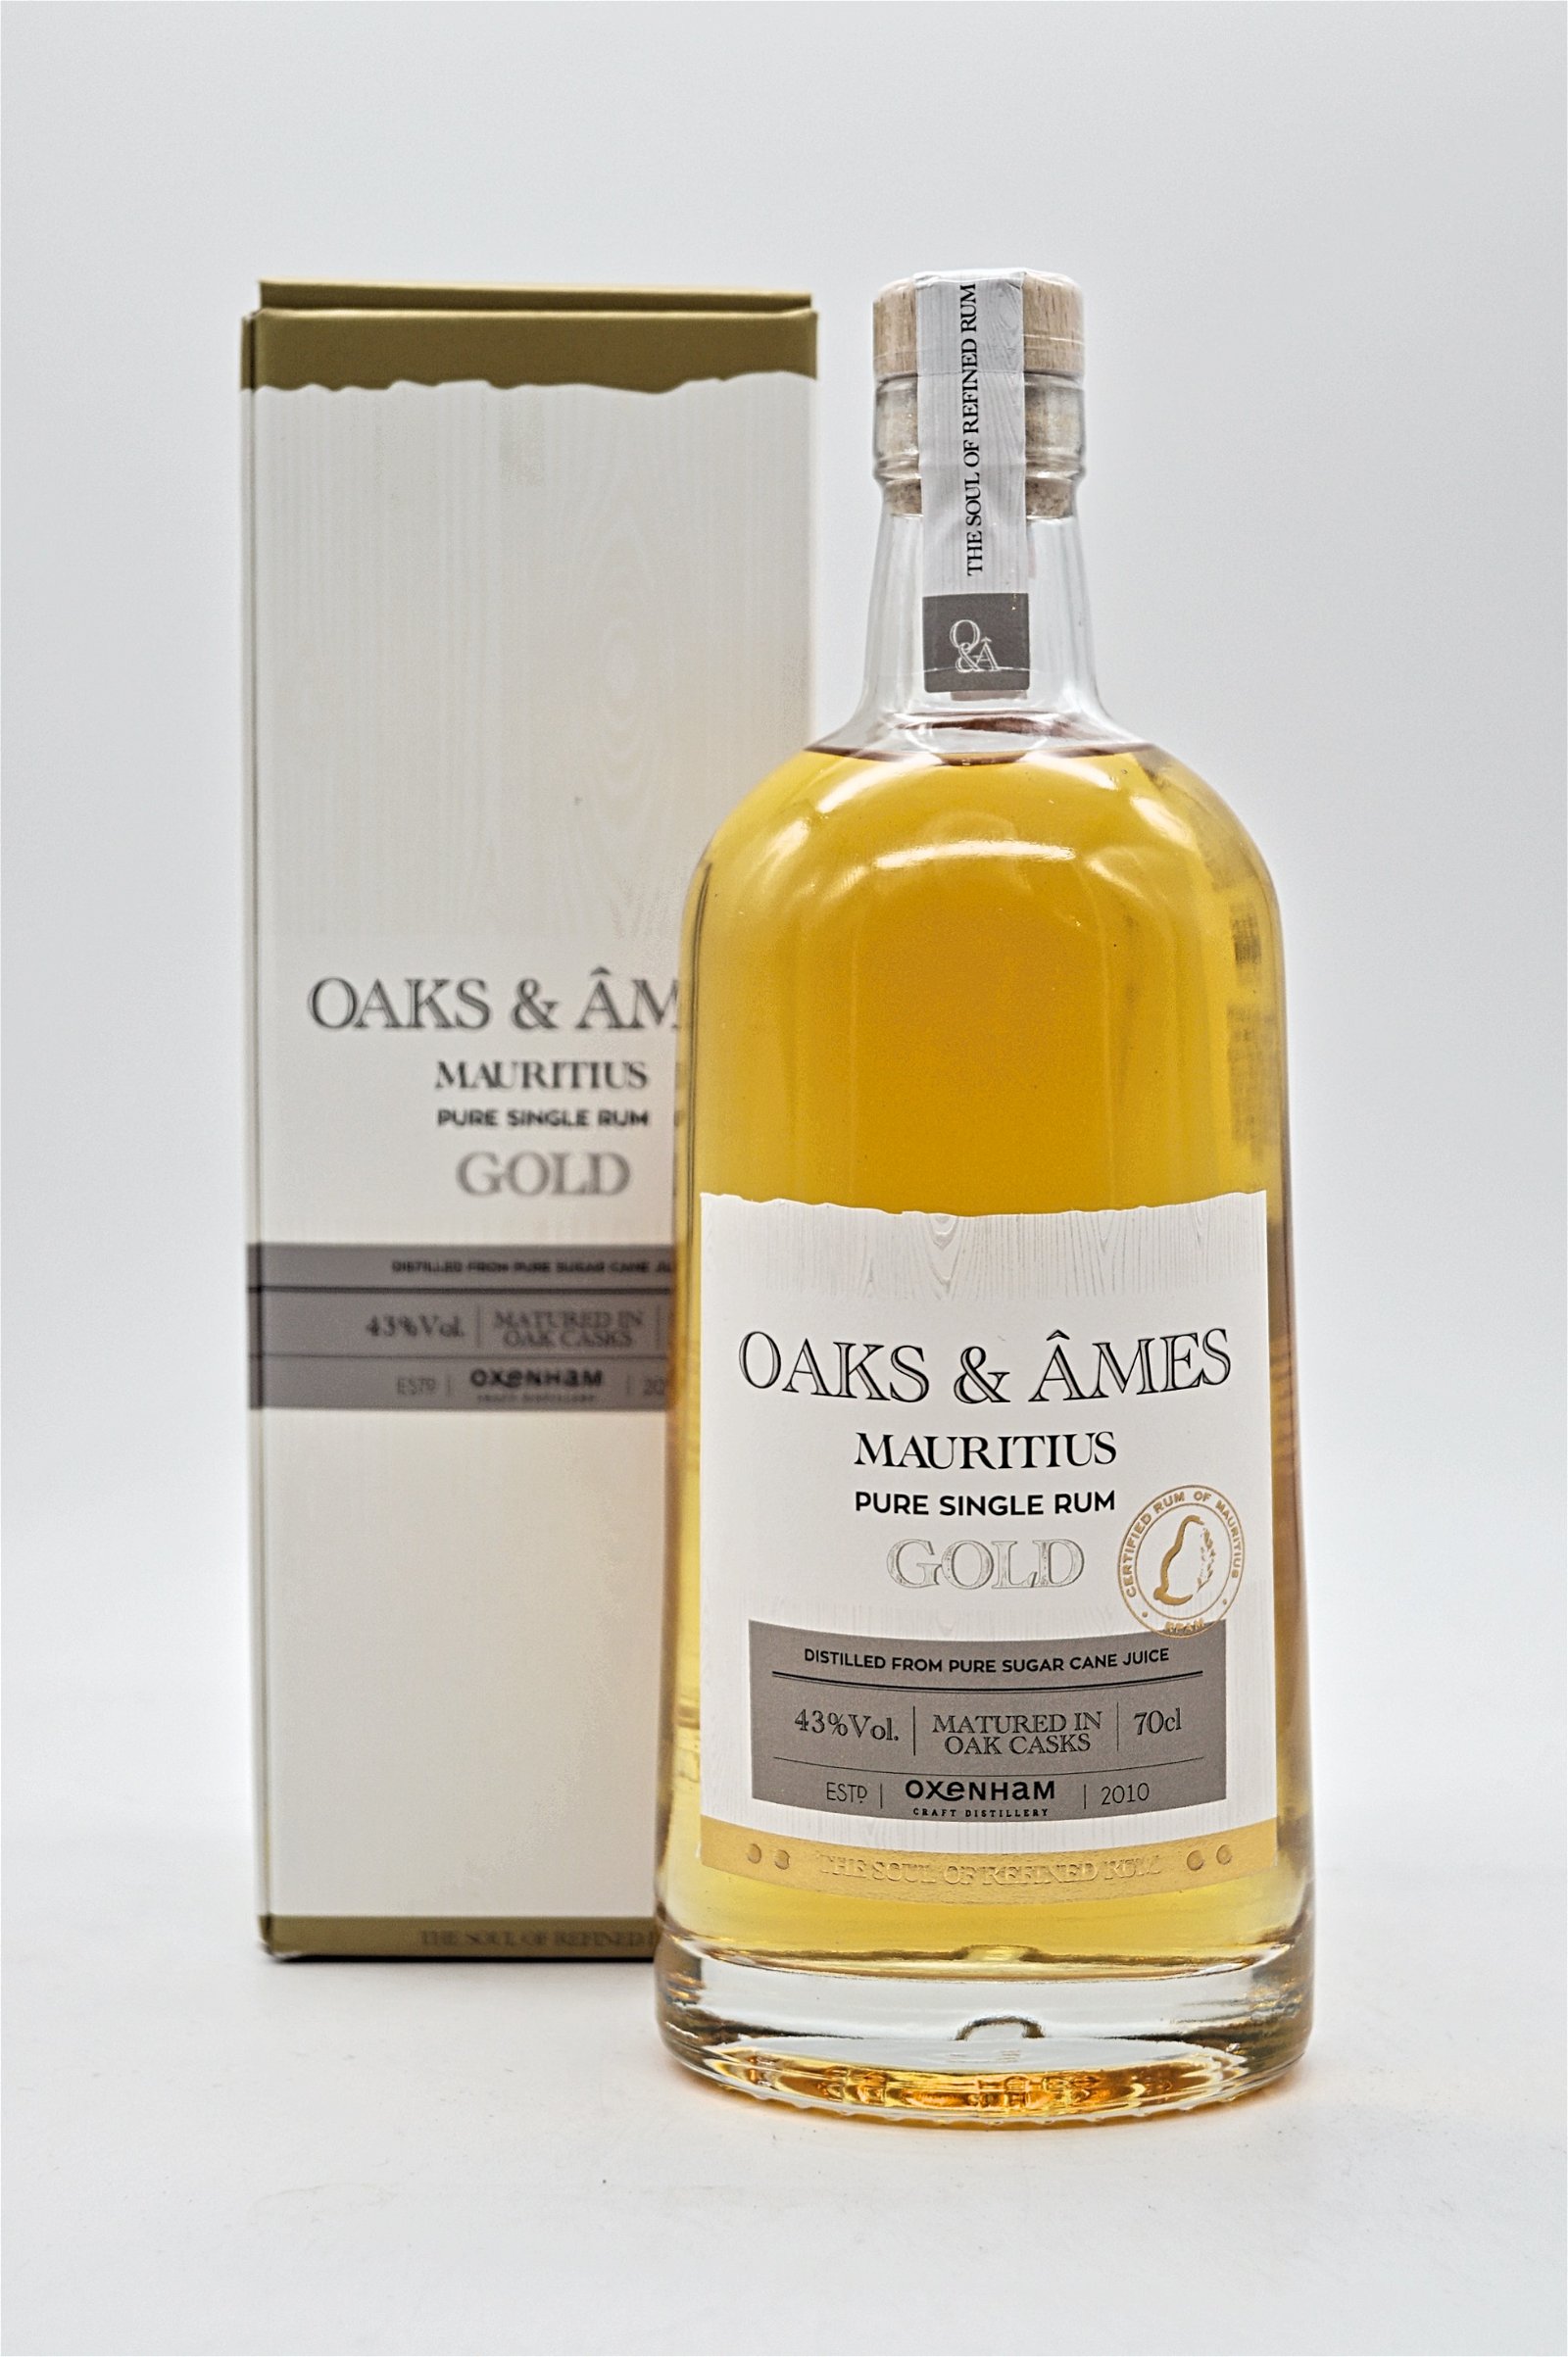 Oaks & Ames Gold Mauritius Pure Single Rum